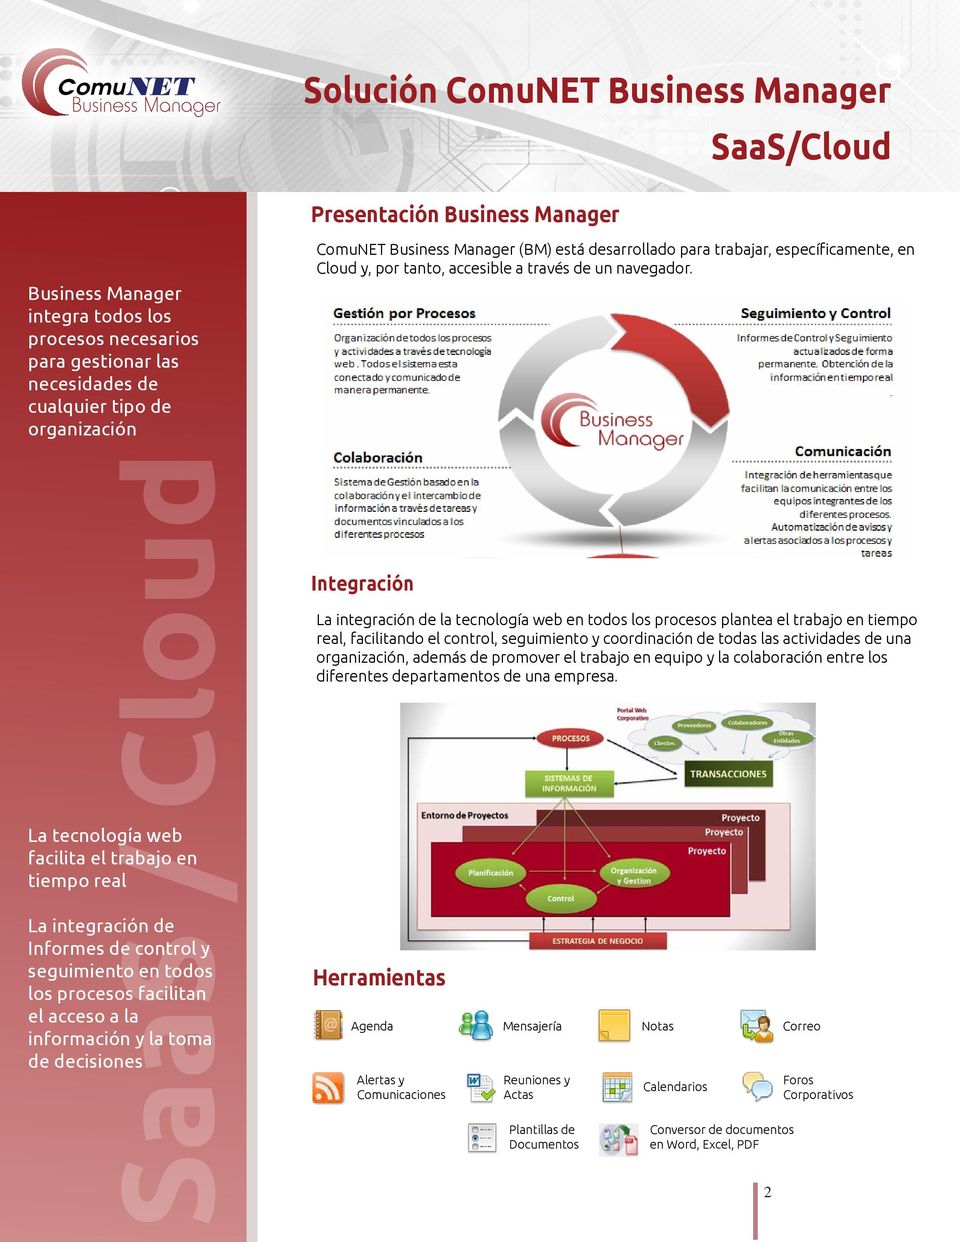 Business Manager (BM) está desarrollado para trabajar, específicamente, en Cloud y, por tanto, accesible a través de un navegador.